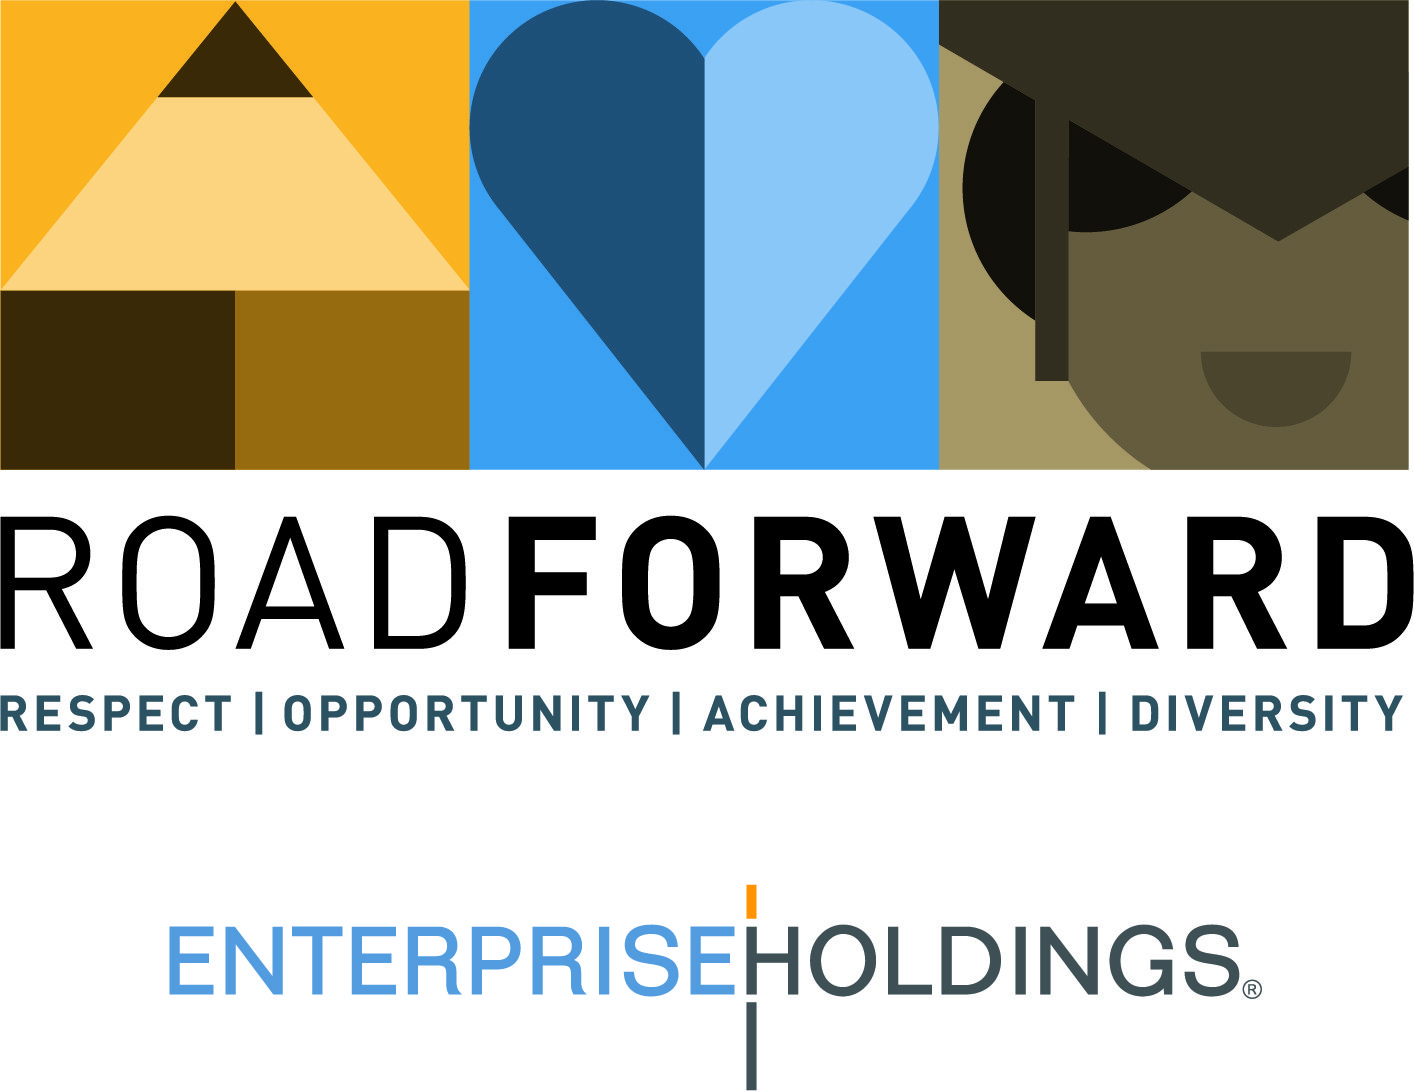 Enterprise Holdings logo with RoadForward banner